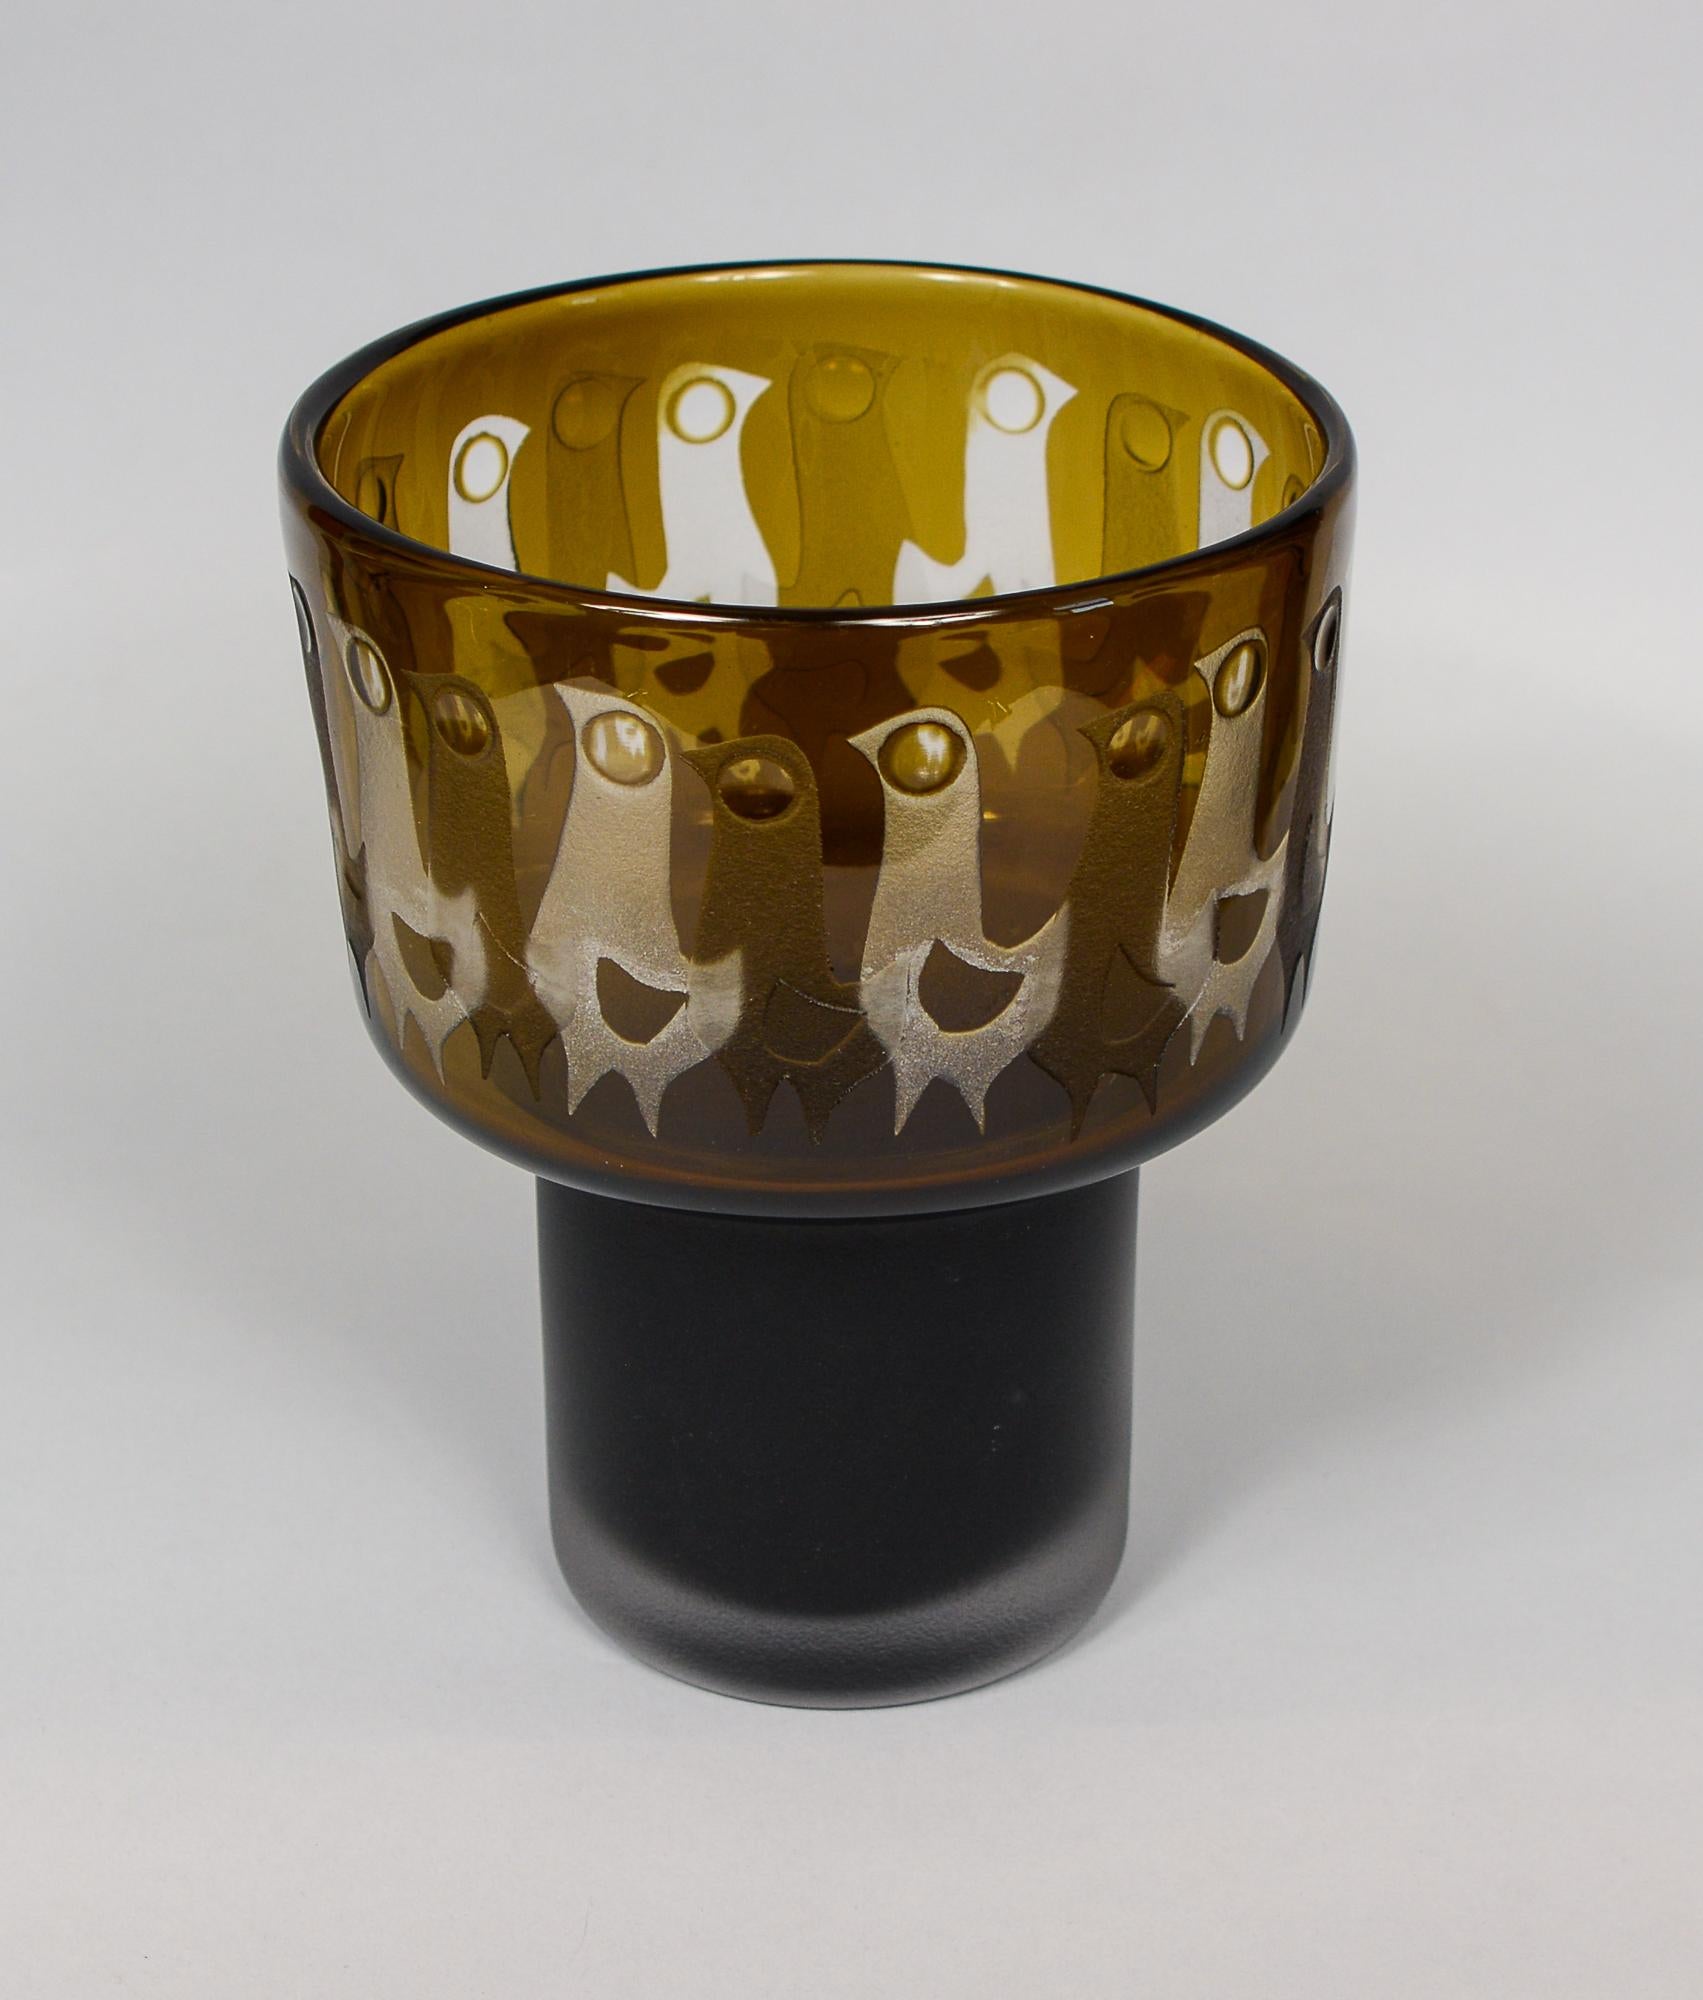 Vogelvase aus gehärtetem Glas, entworfen von Ove Sandeberg für Kosta. Um die Vase herum sind sowohl innen als auch außen Vögel in Säure geätzt. Die inneren Vögel werden aufgeräumt. 